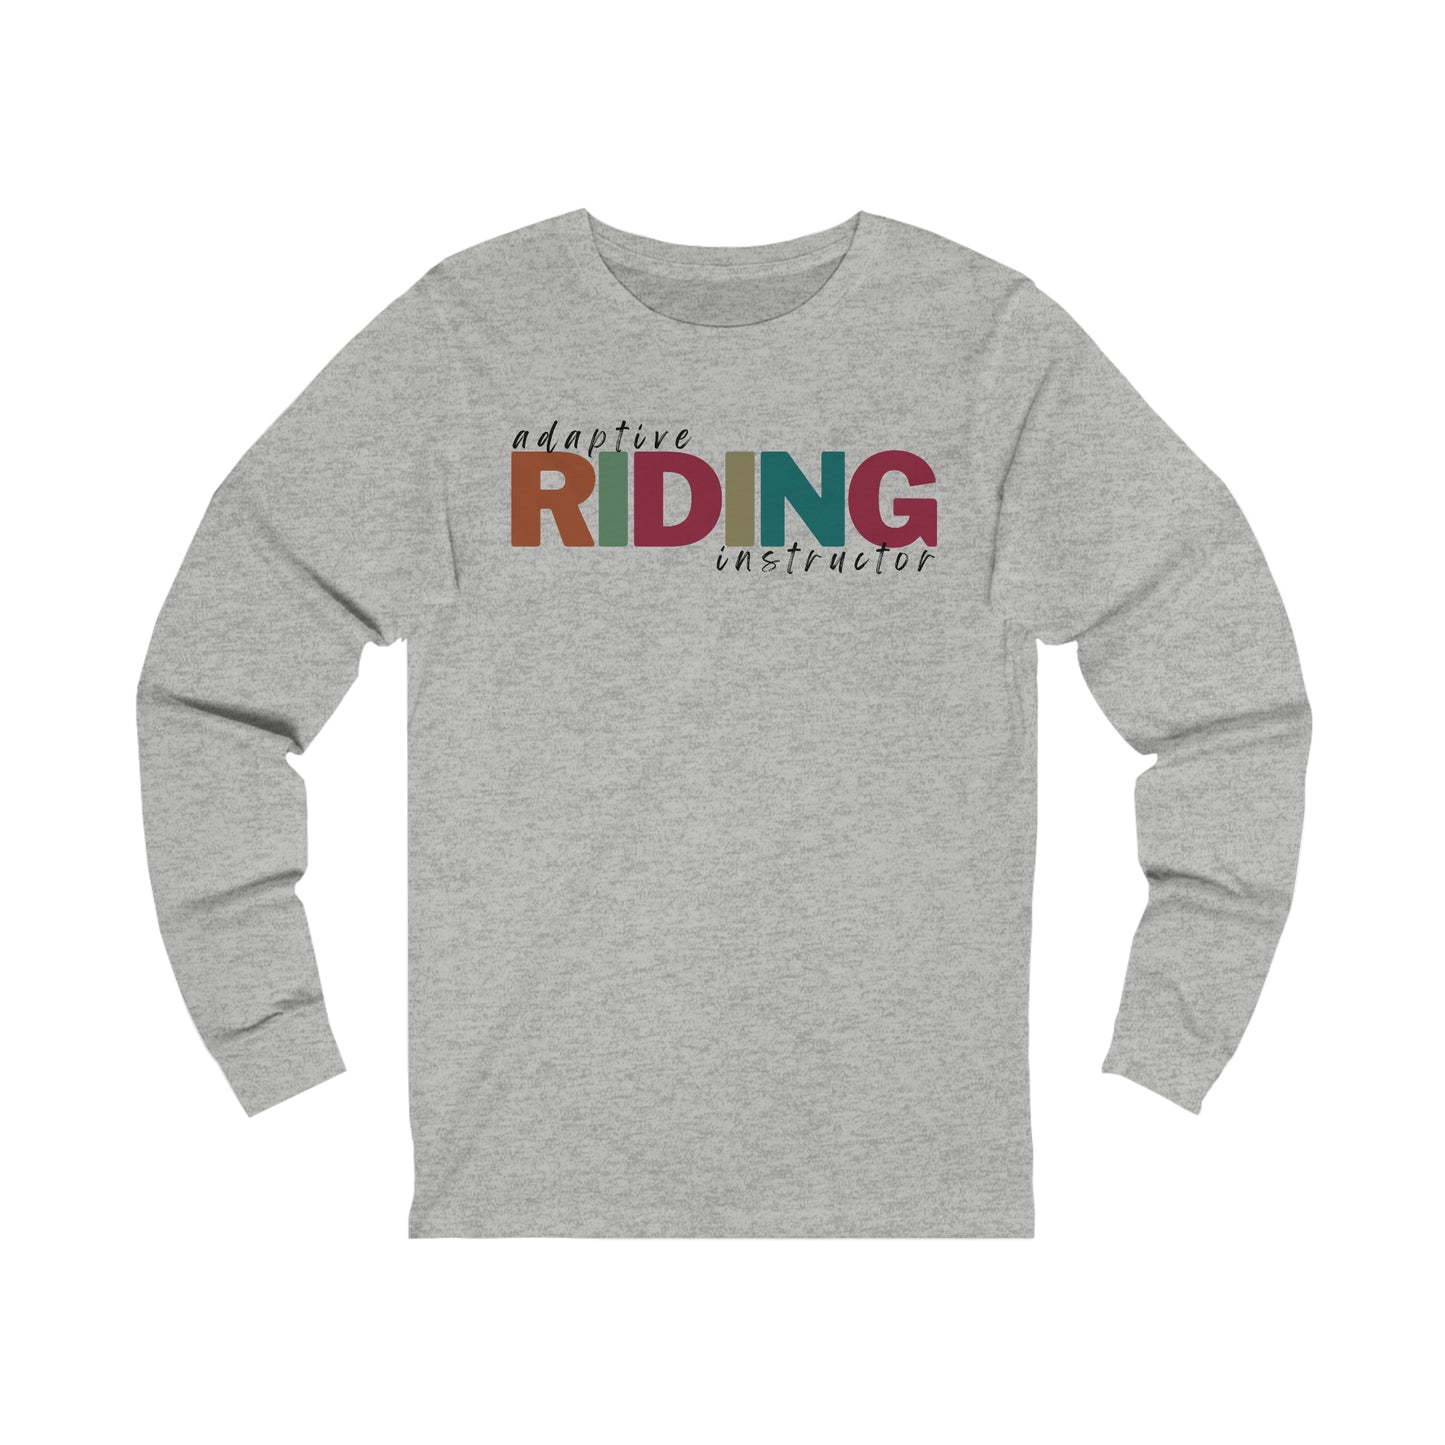 Adaptive Riding Instructor- unisex long sleeve shirt